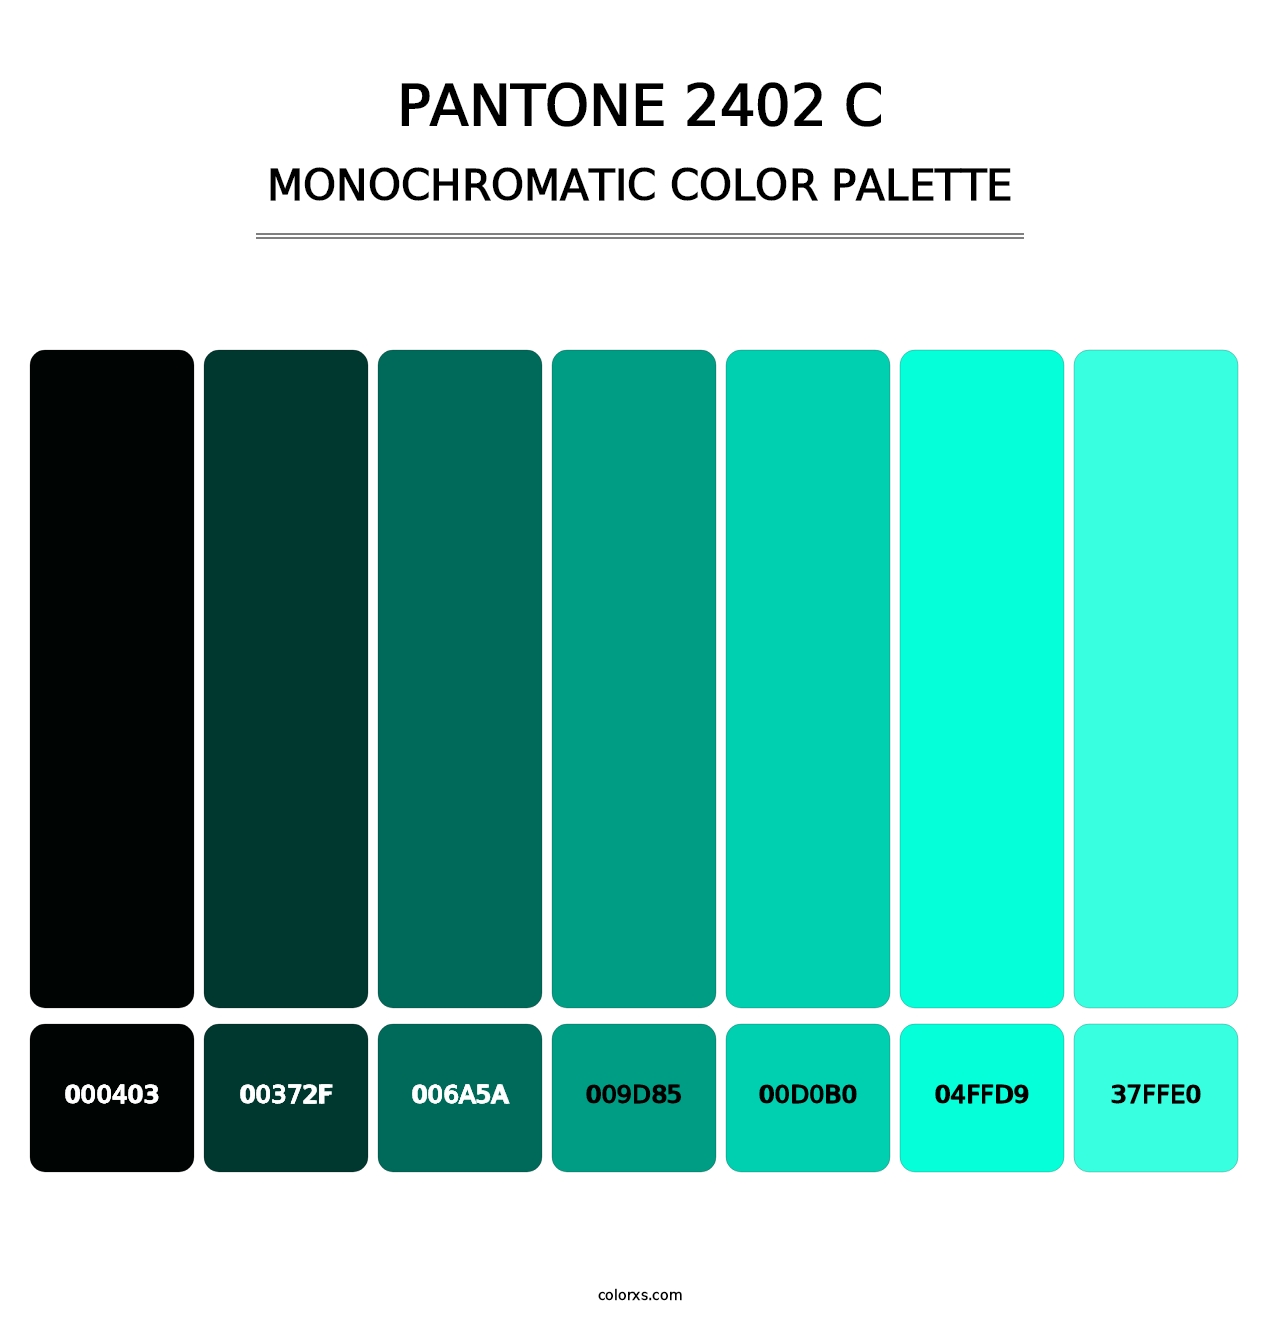 PANTONE 2402 C - Monochromatic Color Palette